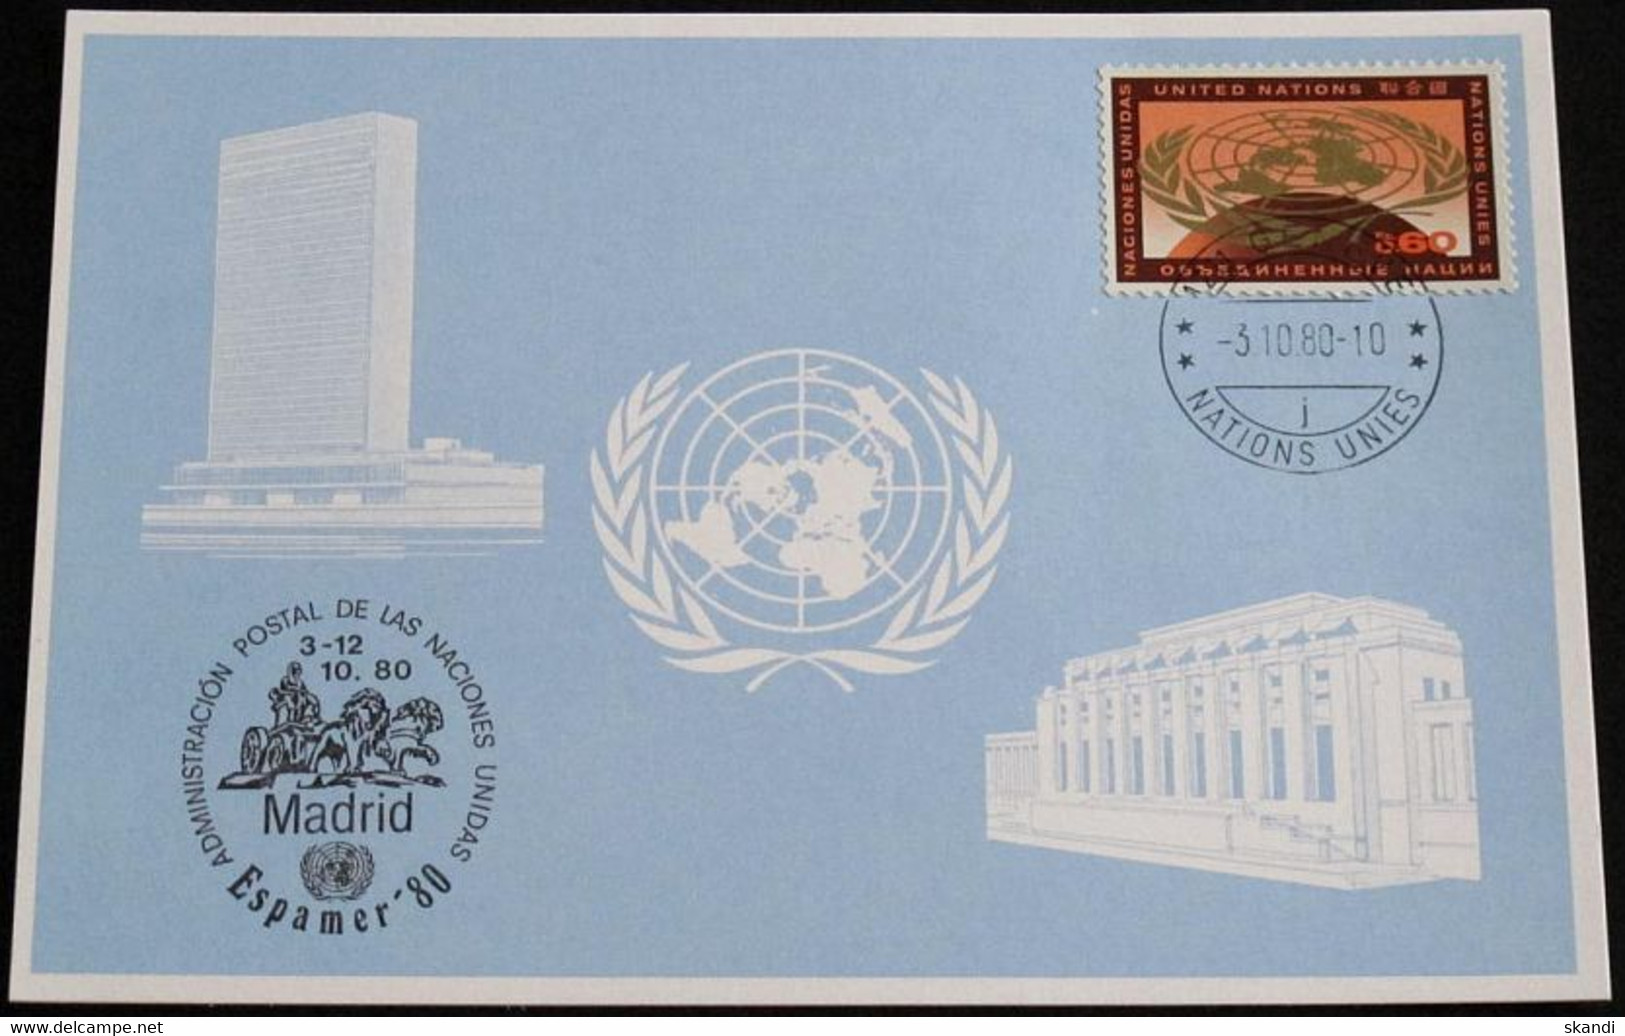 UNO GENF 1980 Mi-Nr. 93 Blaue Karte - Blue Card Mit Erinnerungsstempel ESPAMER 80 MADRID - Lettres & Documents